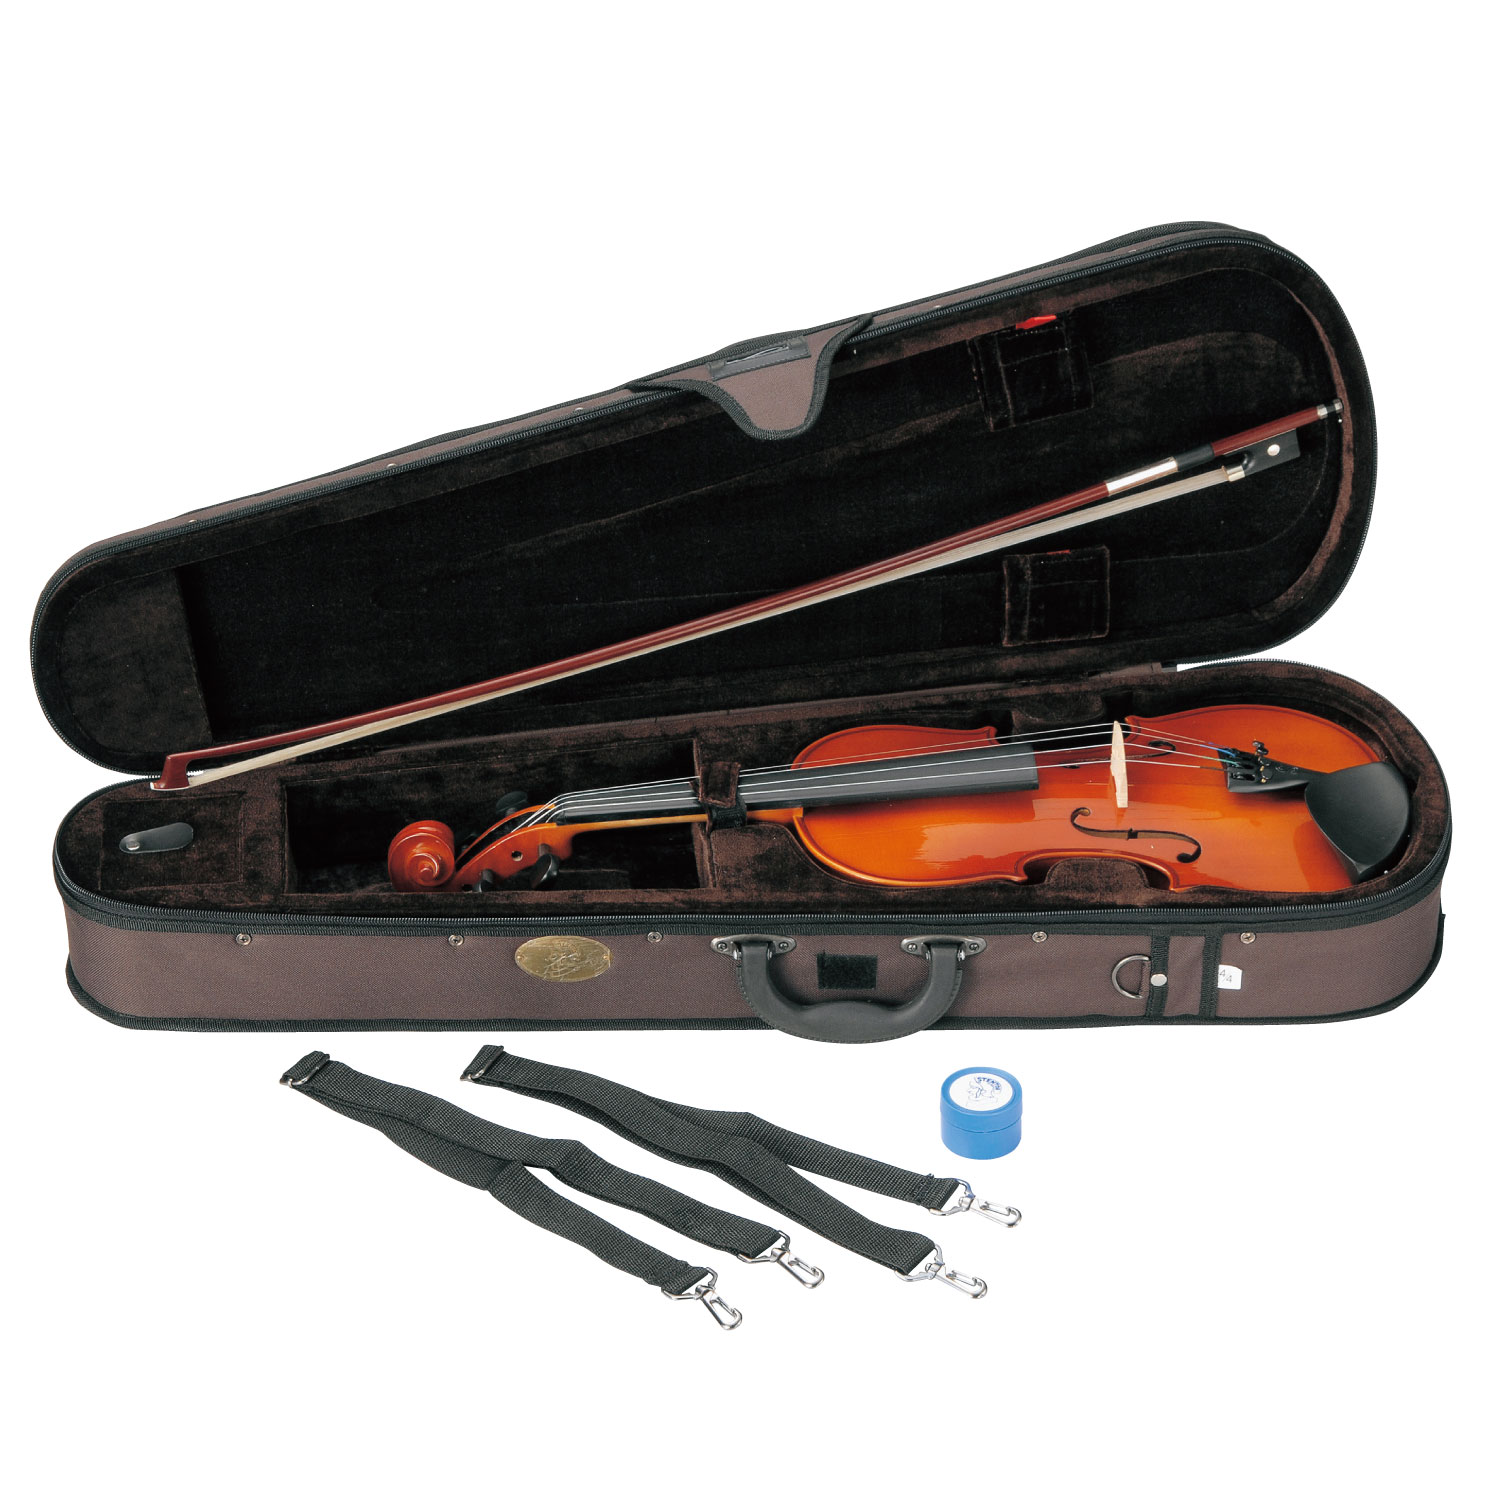 STENTOR バイオリンSV-120 1/10 (1018/H) Violin新品即納可能です